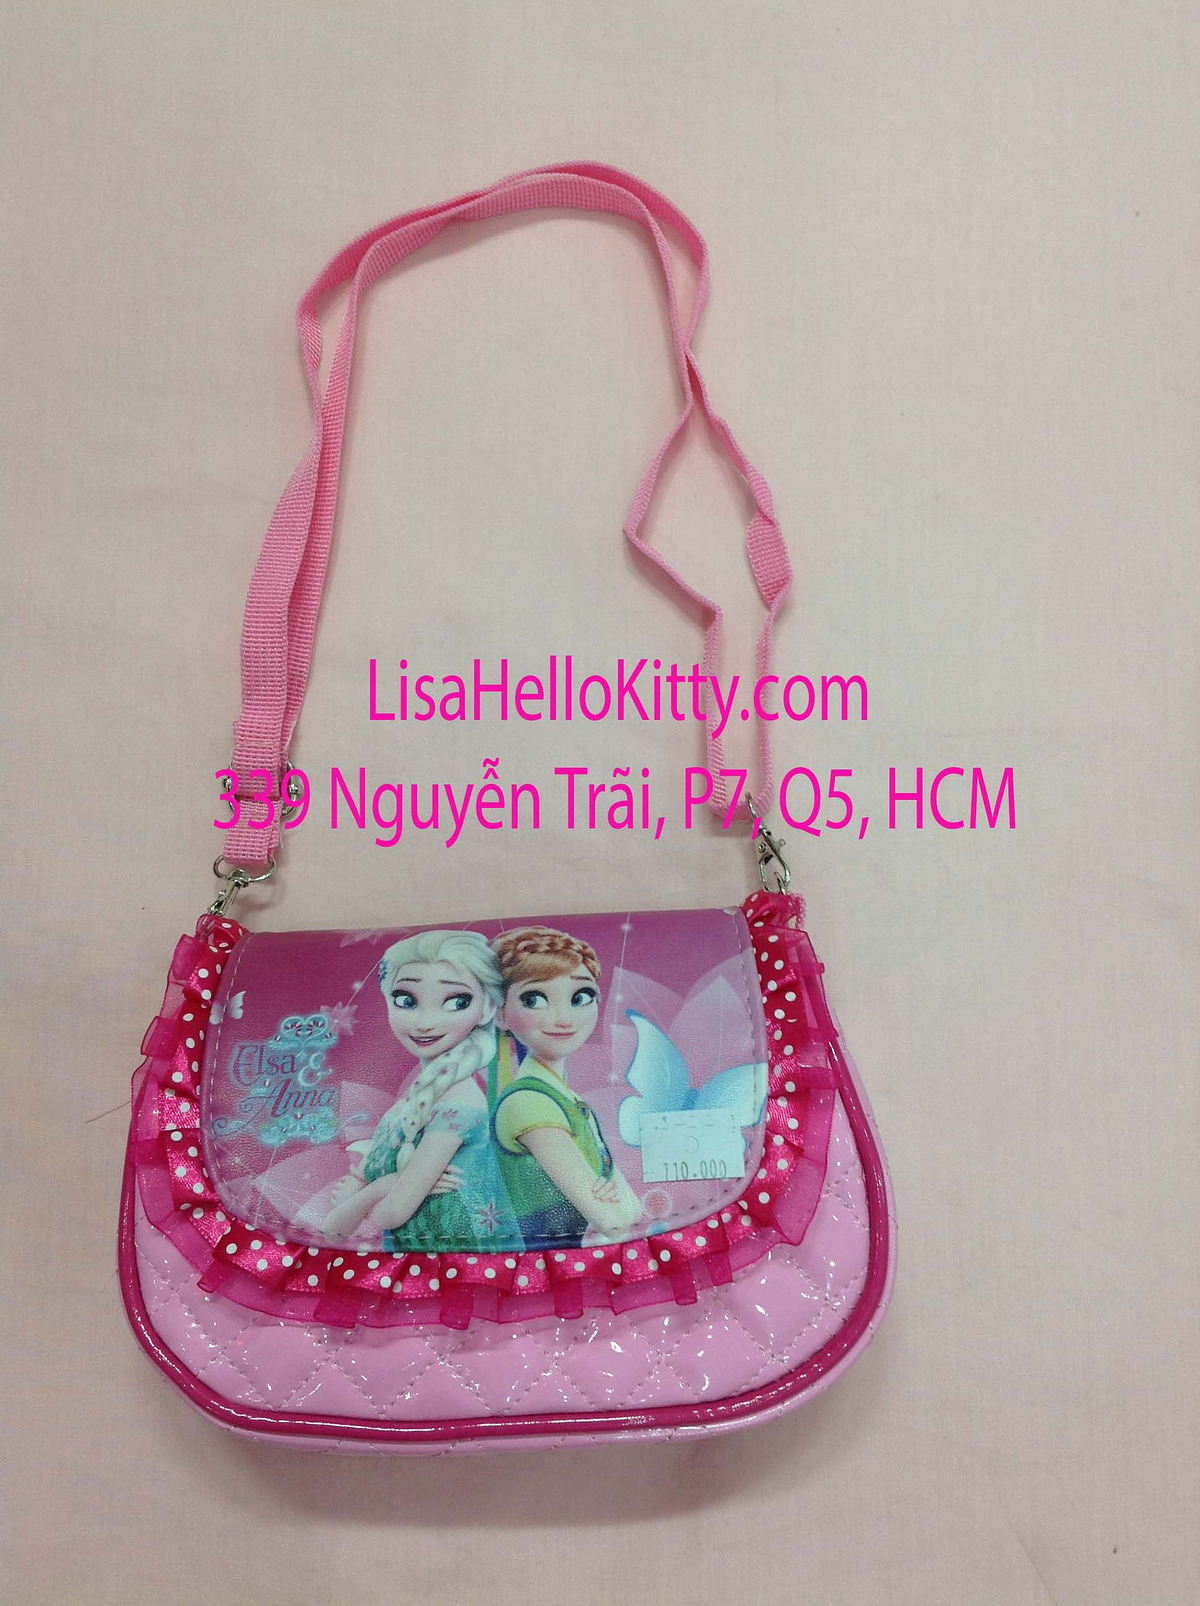 Lisa Shop - Túi xách, túi đeo chéo Hello Kitty công chúa Elsa cho bé - 2